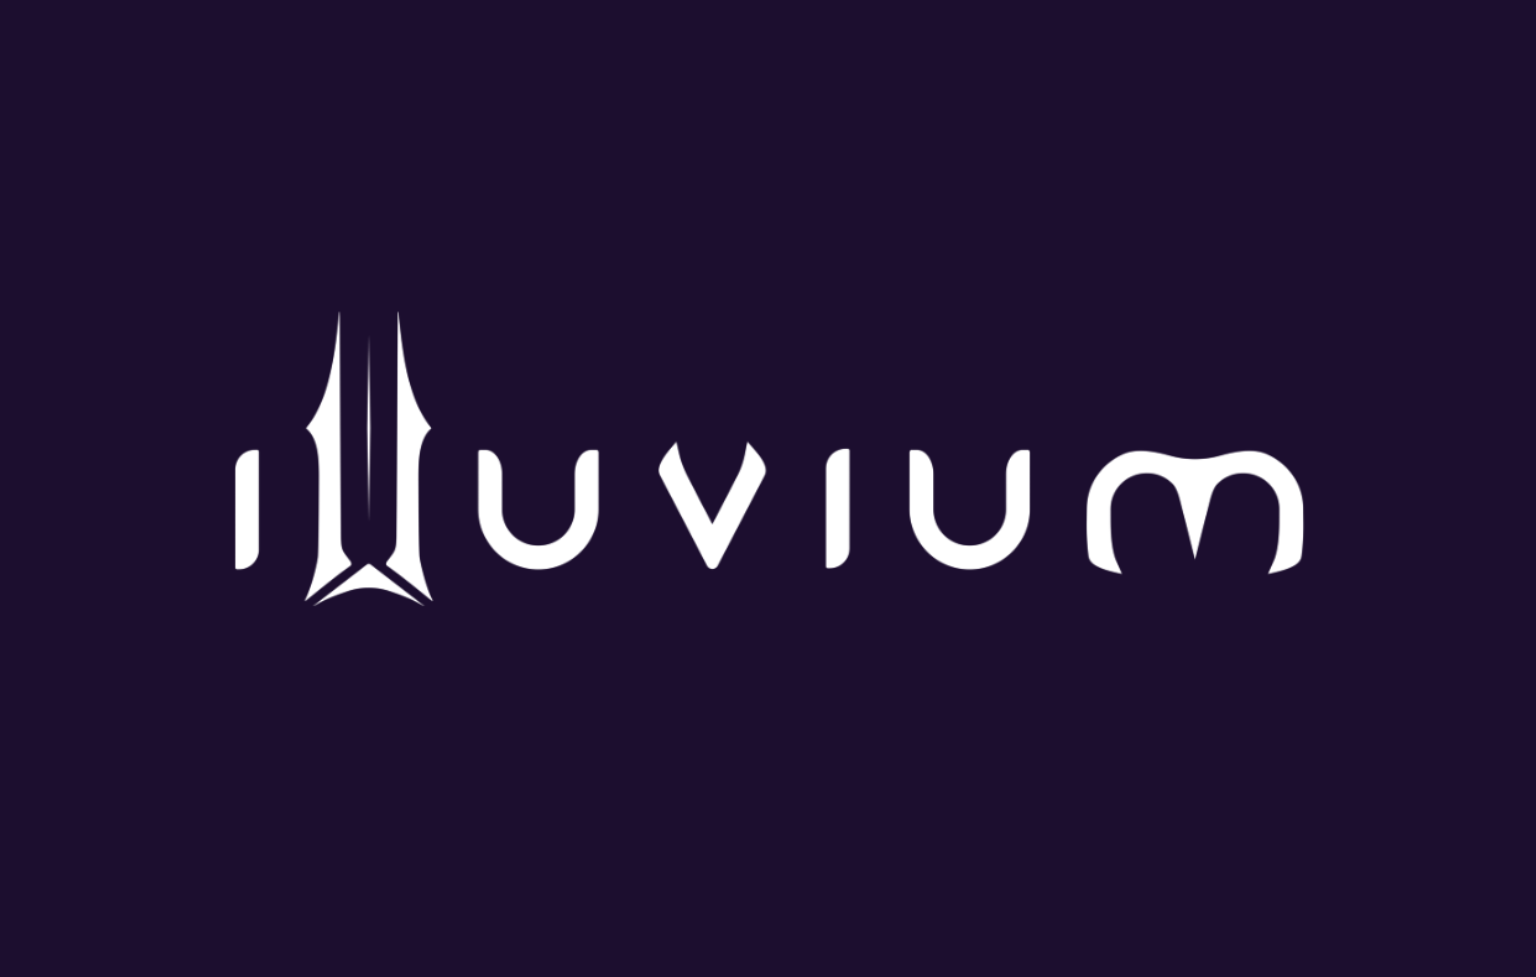 มาดูกันว่า Illuvium คืออะไร? เหรียญ ILV ใช้ทำอะไรบ้าง?